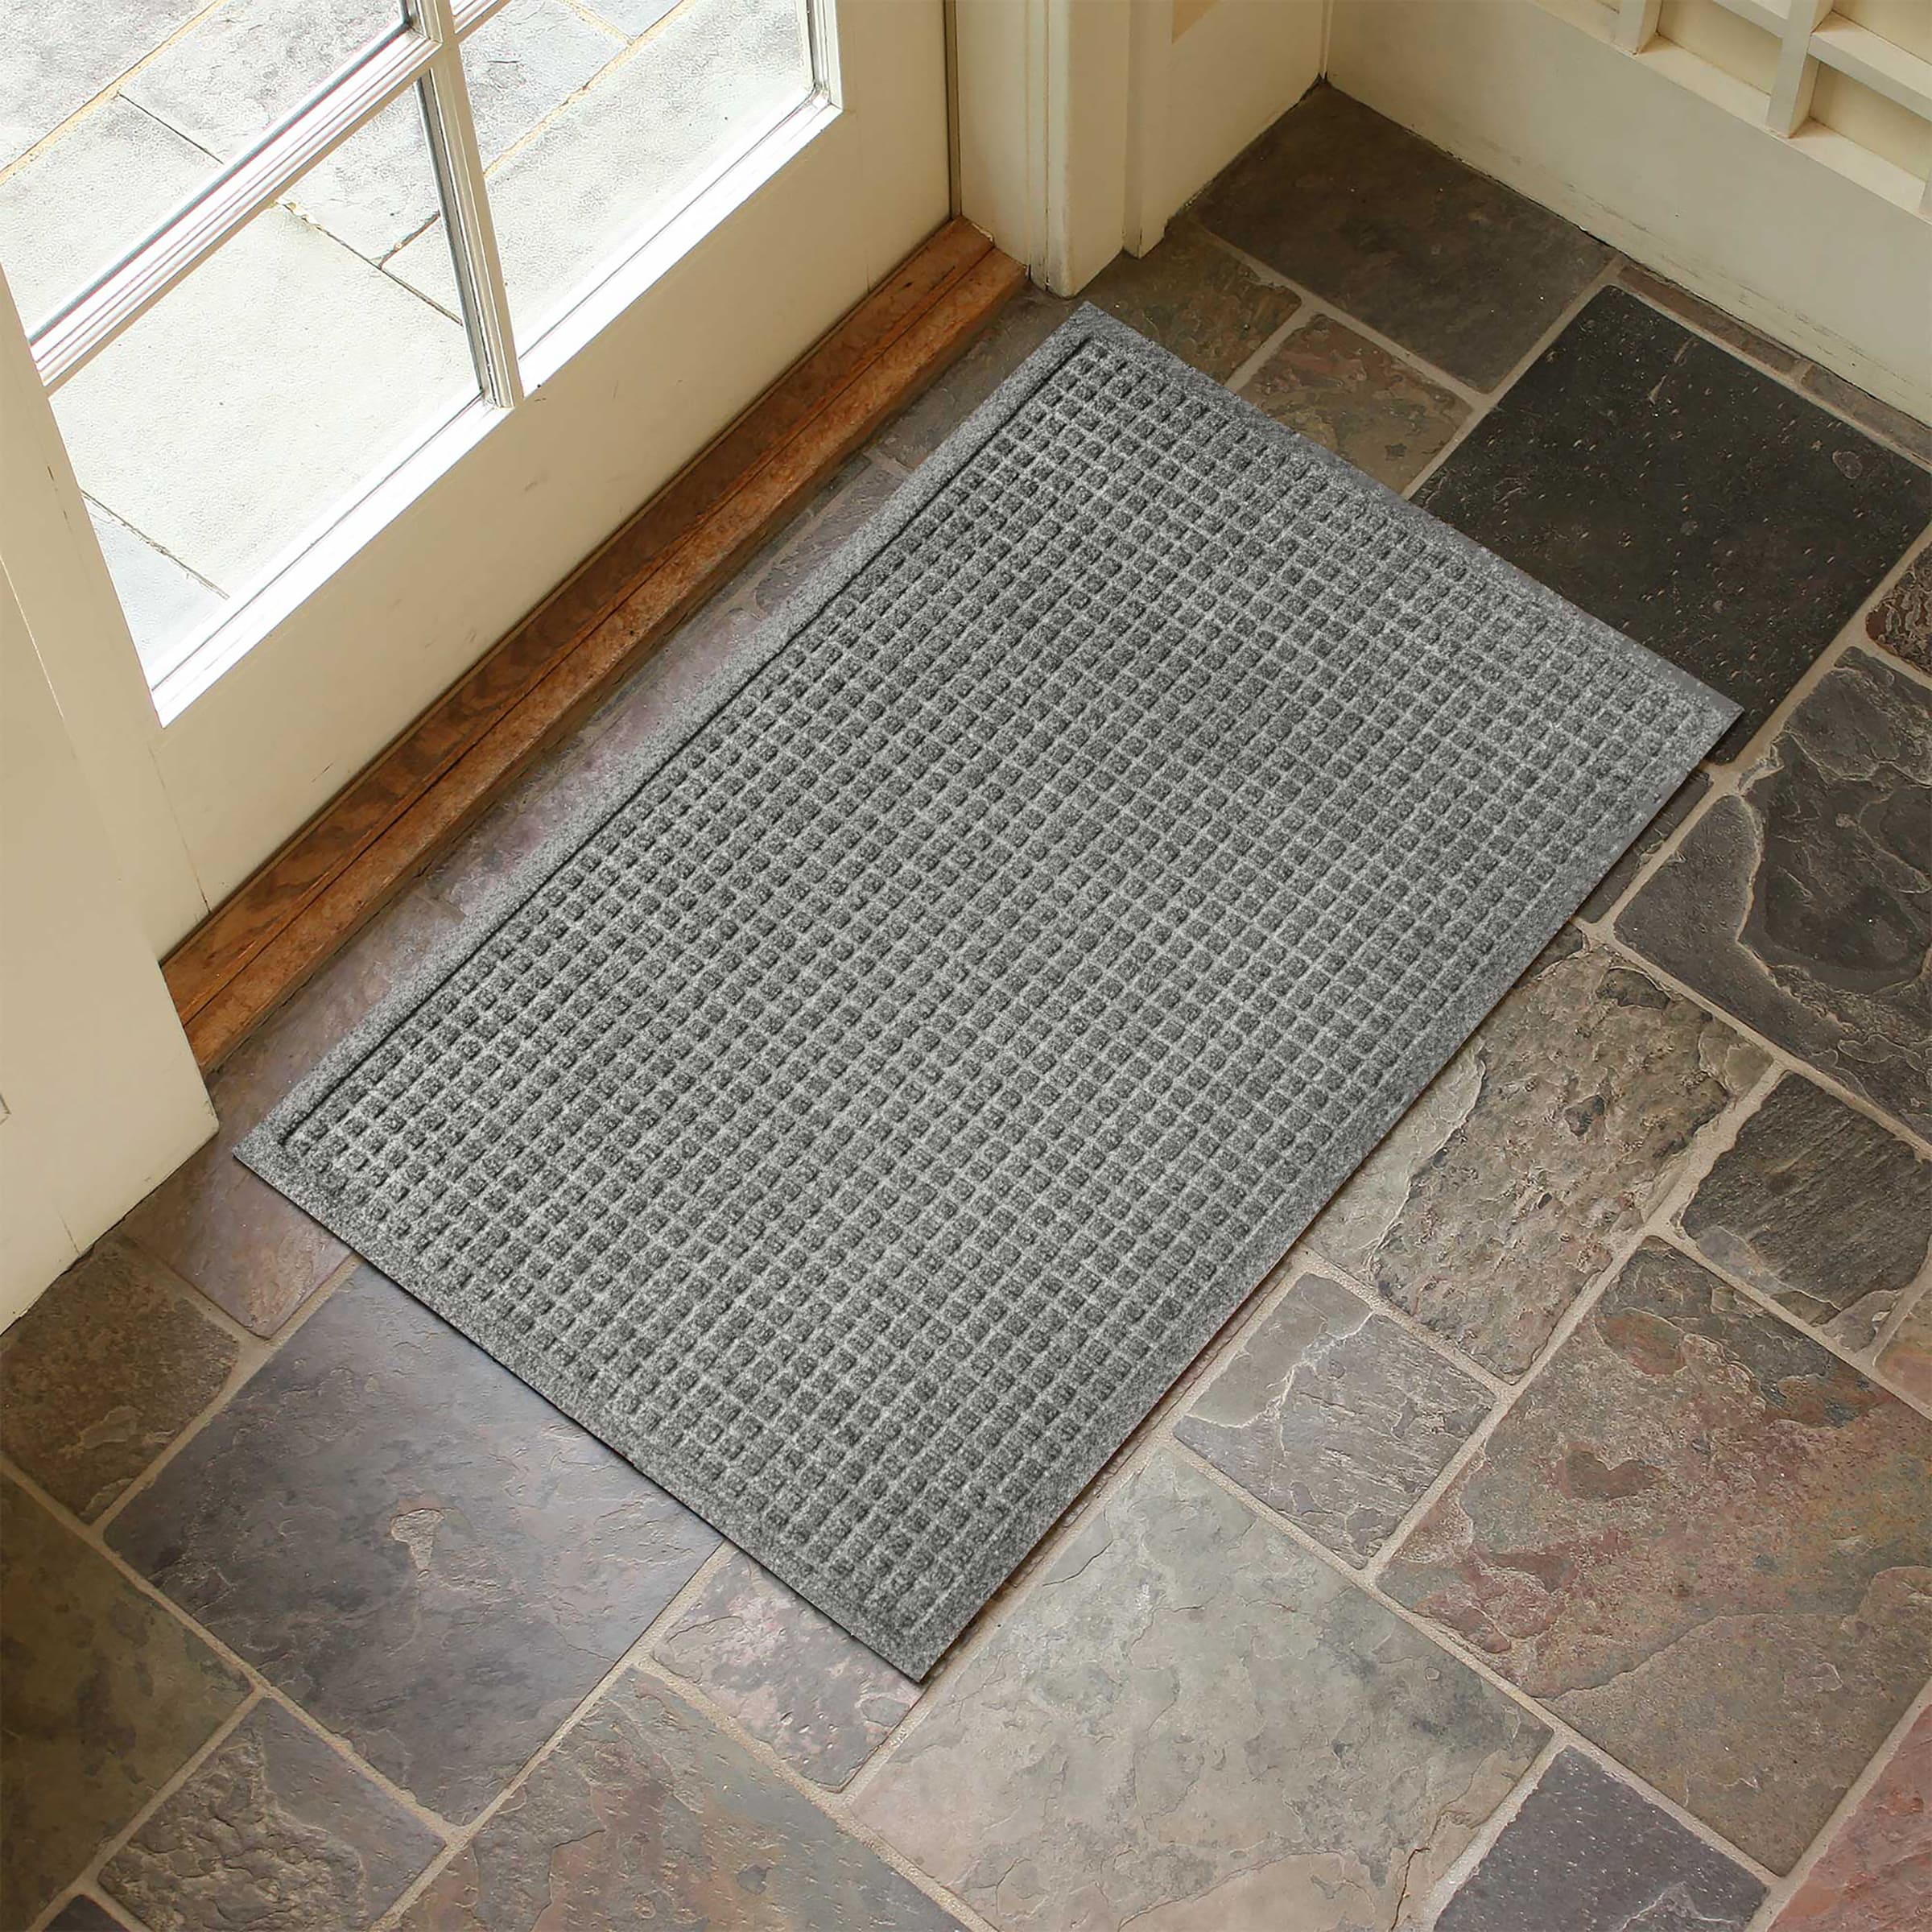 Waterhog Indoor/Outdoor Geometric Doormat, 4' x 6' - Bordeaux